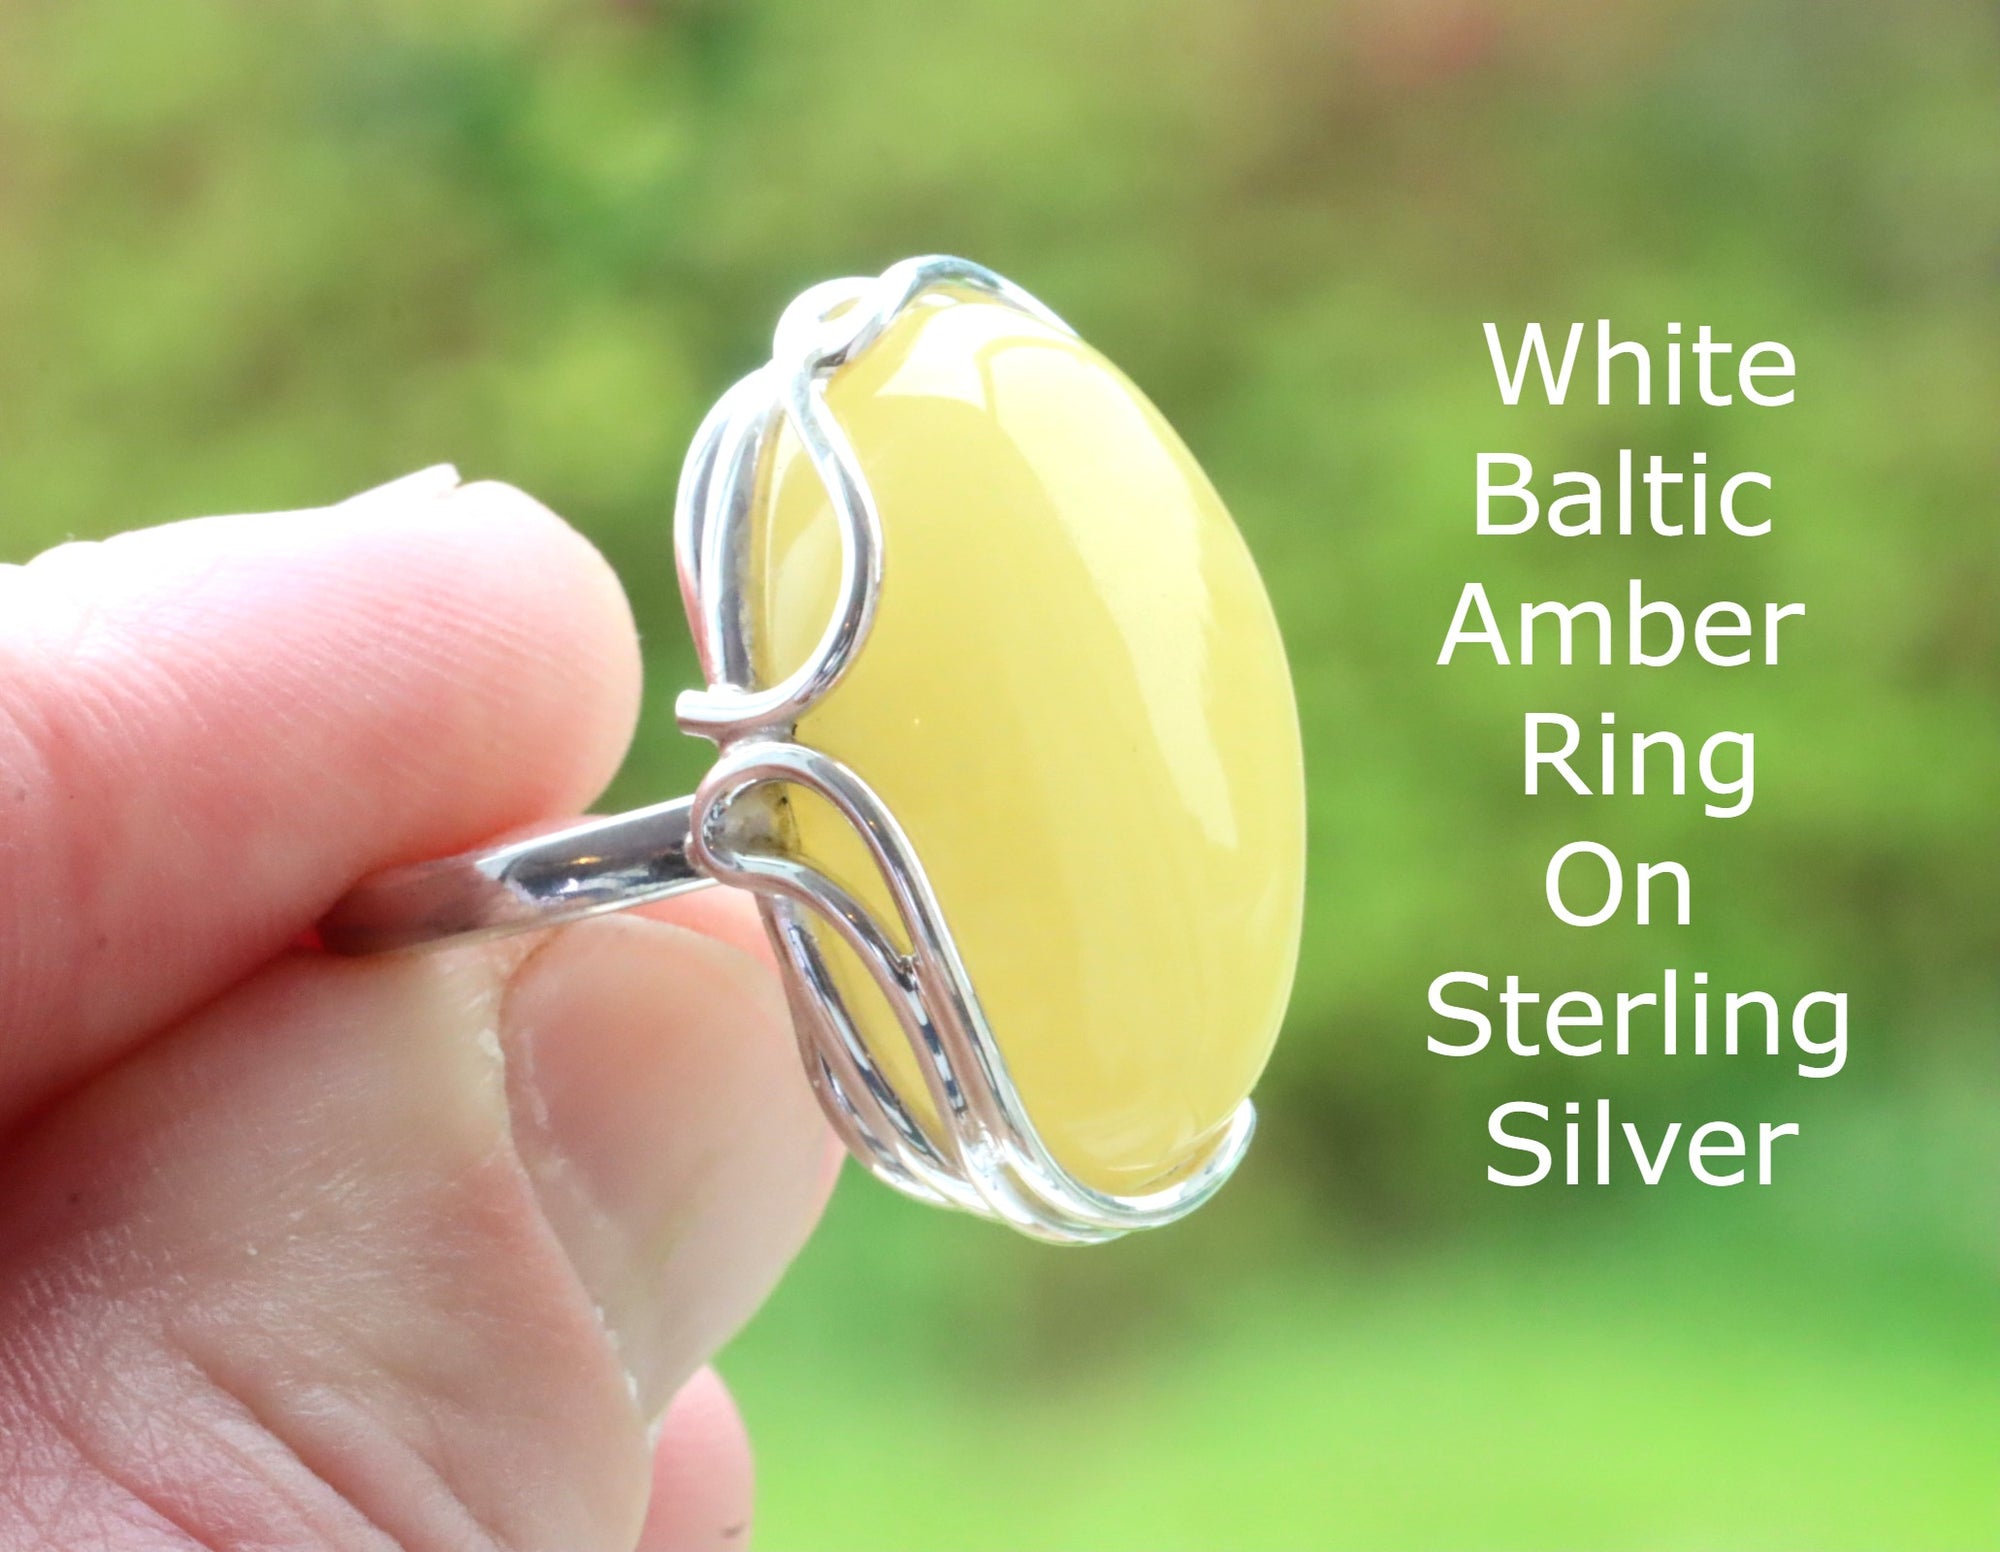 White Baltic Amber Ring